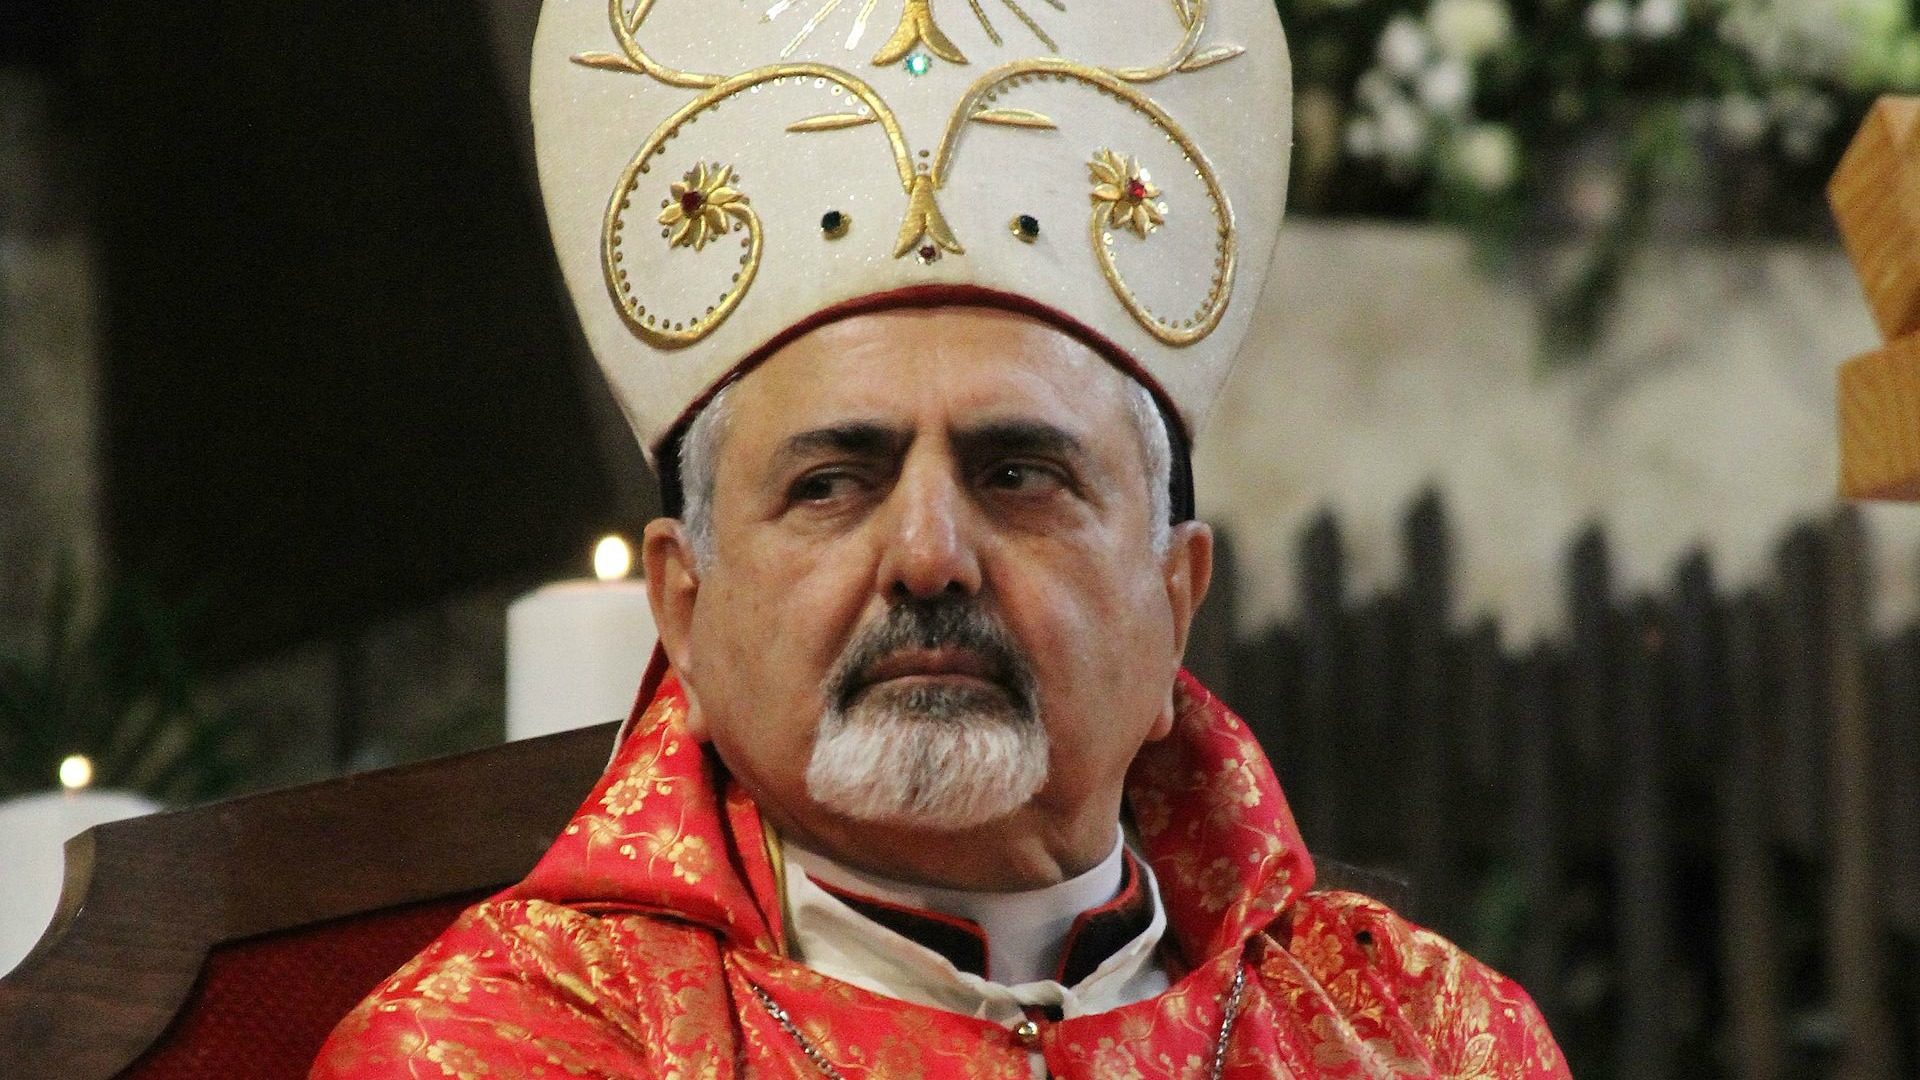 Le patriarche syro-catholique Ignace Younan a été "horrifié" par la dévastation en Irak (Photo: HazteOir.org/Wikimedia Commons/CC BY-SA 2.0)